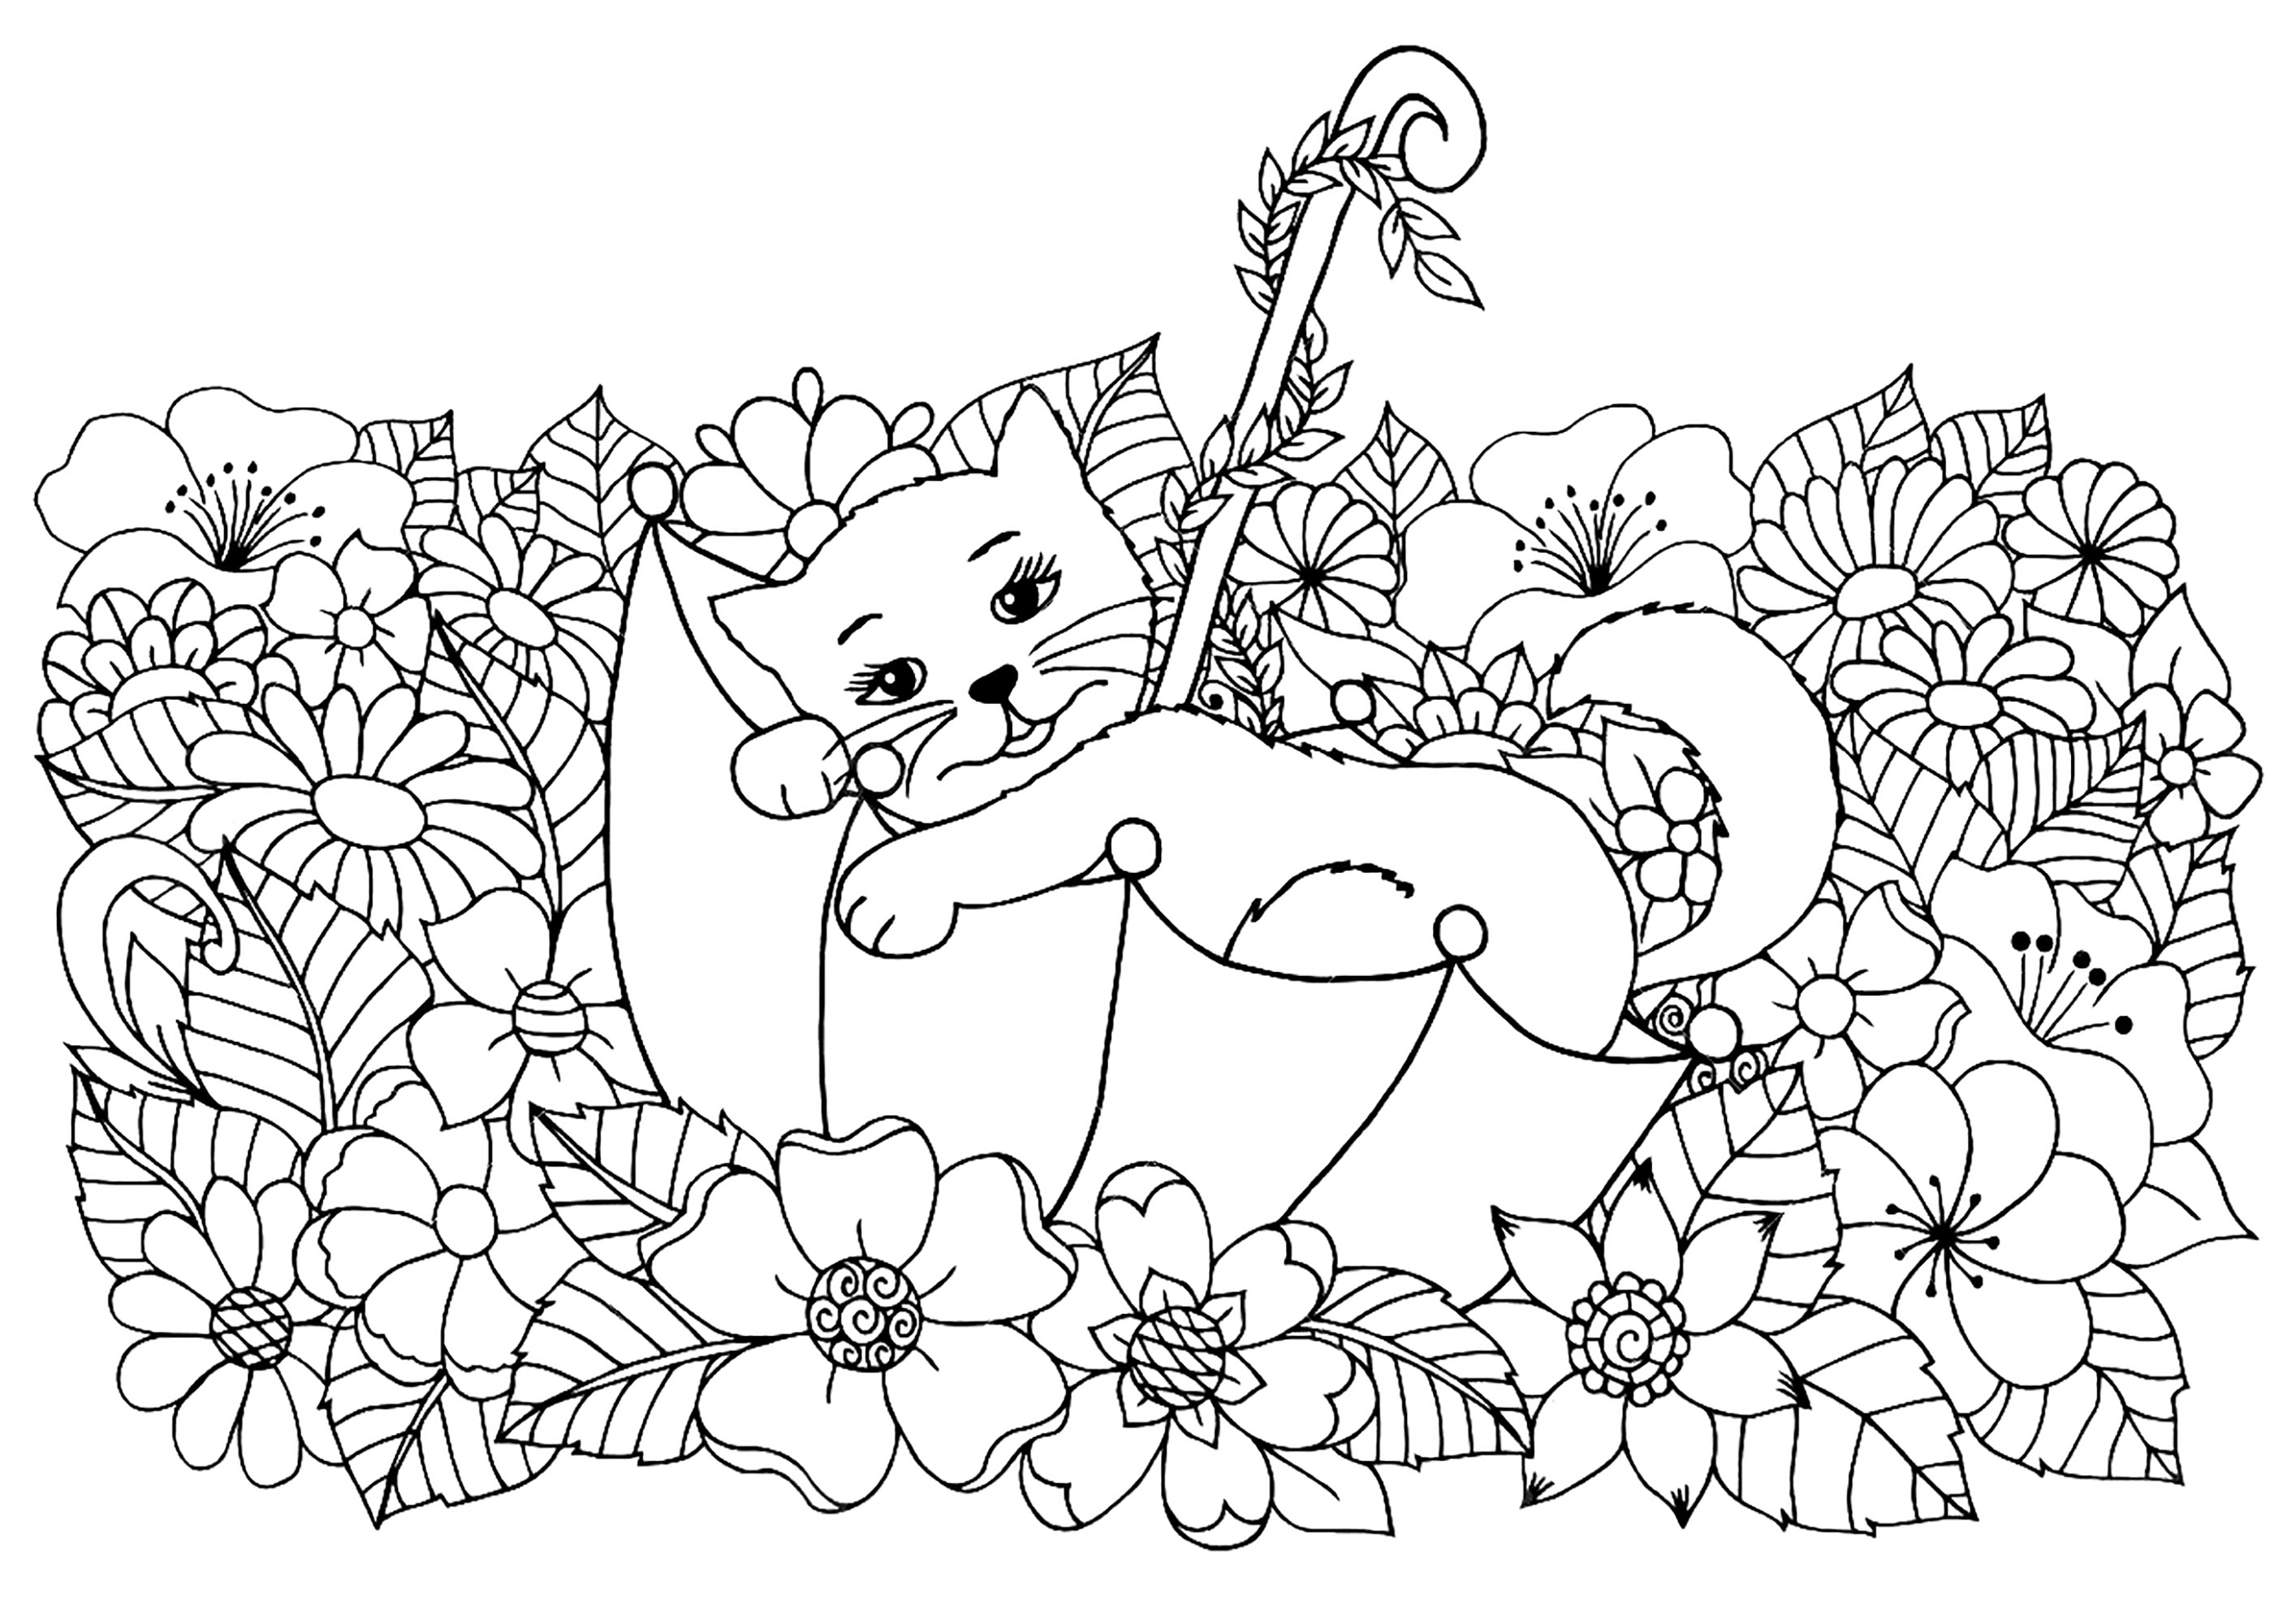 Joli chaton se reposant dans un parapluie, entouré de belles fleurs, Artiste : Maritel67   Source : 123rf